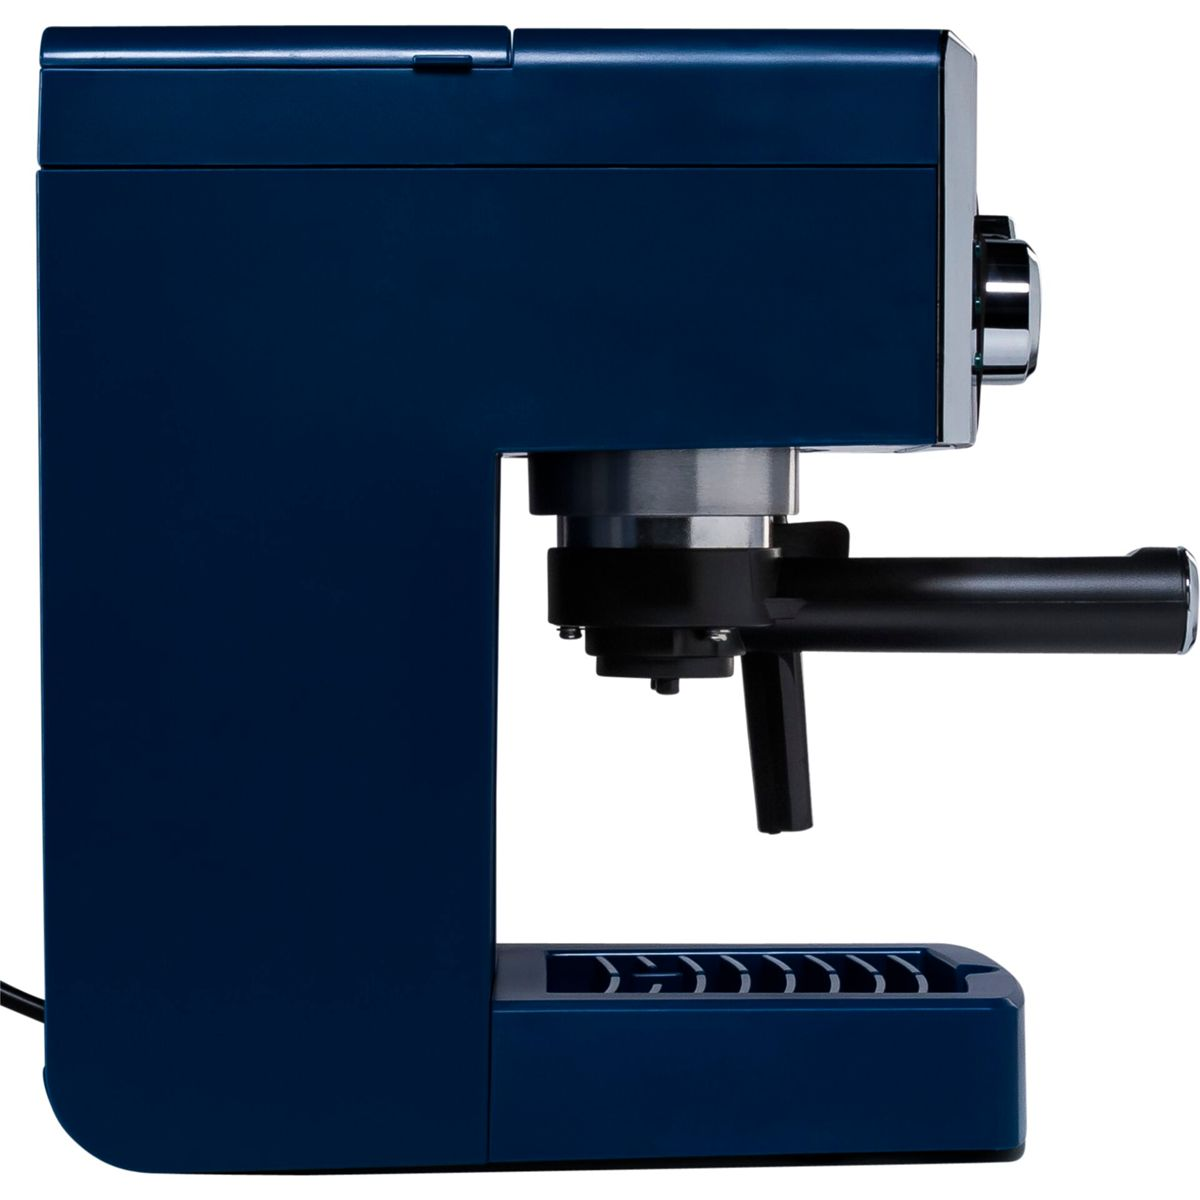 GAGGIA R18433/12 Viva Style blau Chic blue Siebträgermaschine